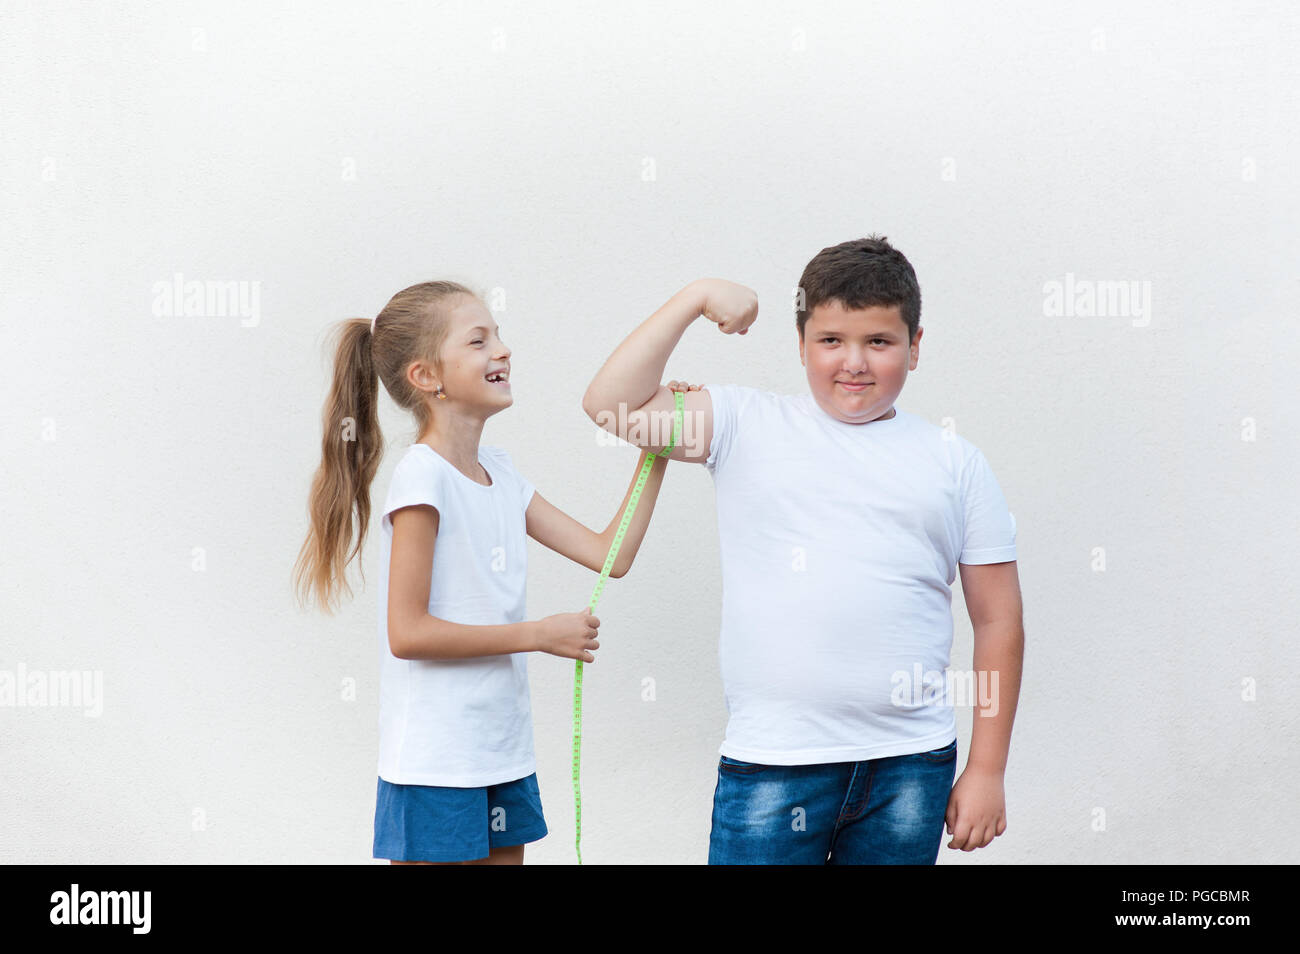 Ziemlich Lachen kaukasischen Thin gesunde Mädchen messen cute Fat Boy Bizeps Muskeln mit Klebeband Stockfoto